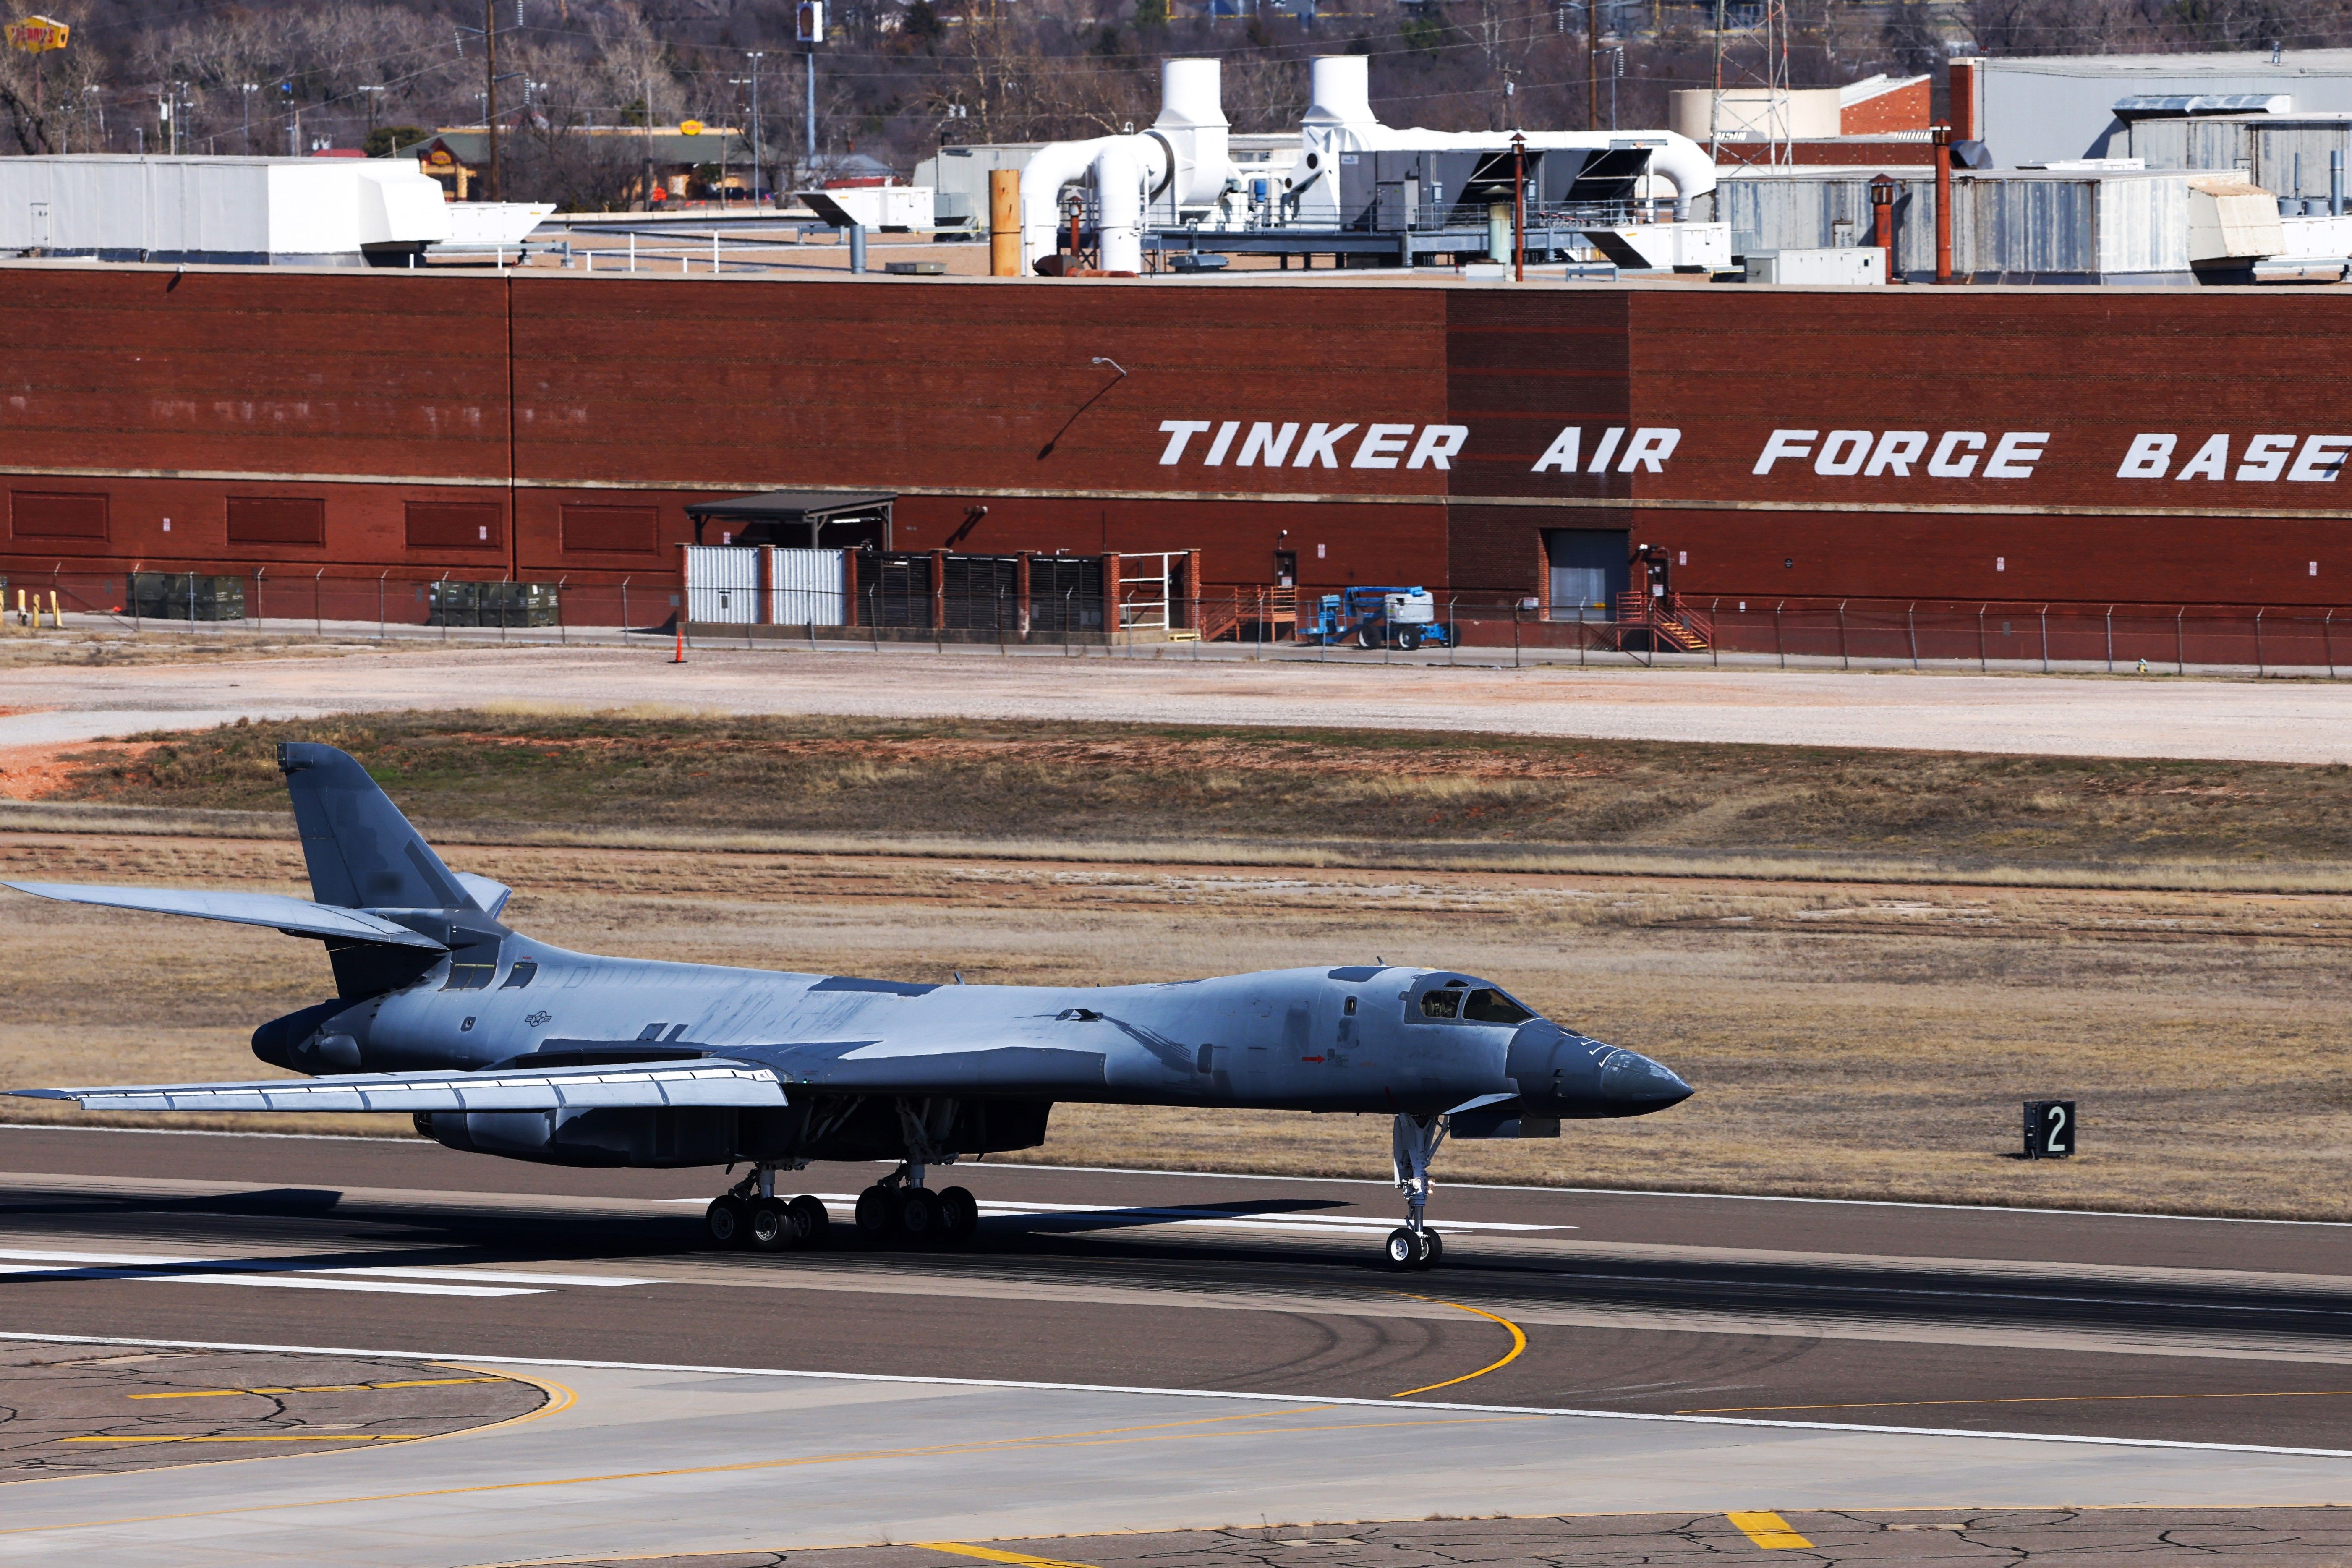 240208-F-SN568-0002 (3x2) - B-1B Lancer landing at Tinker Air Force Base